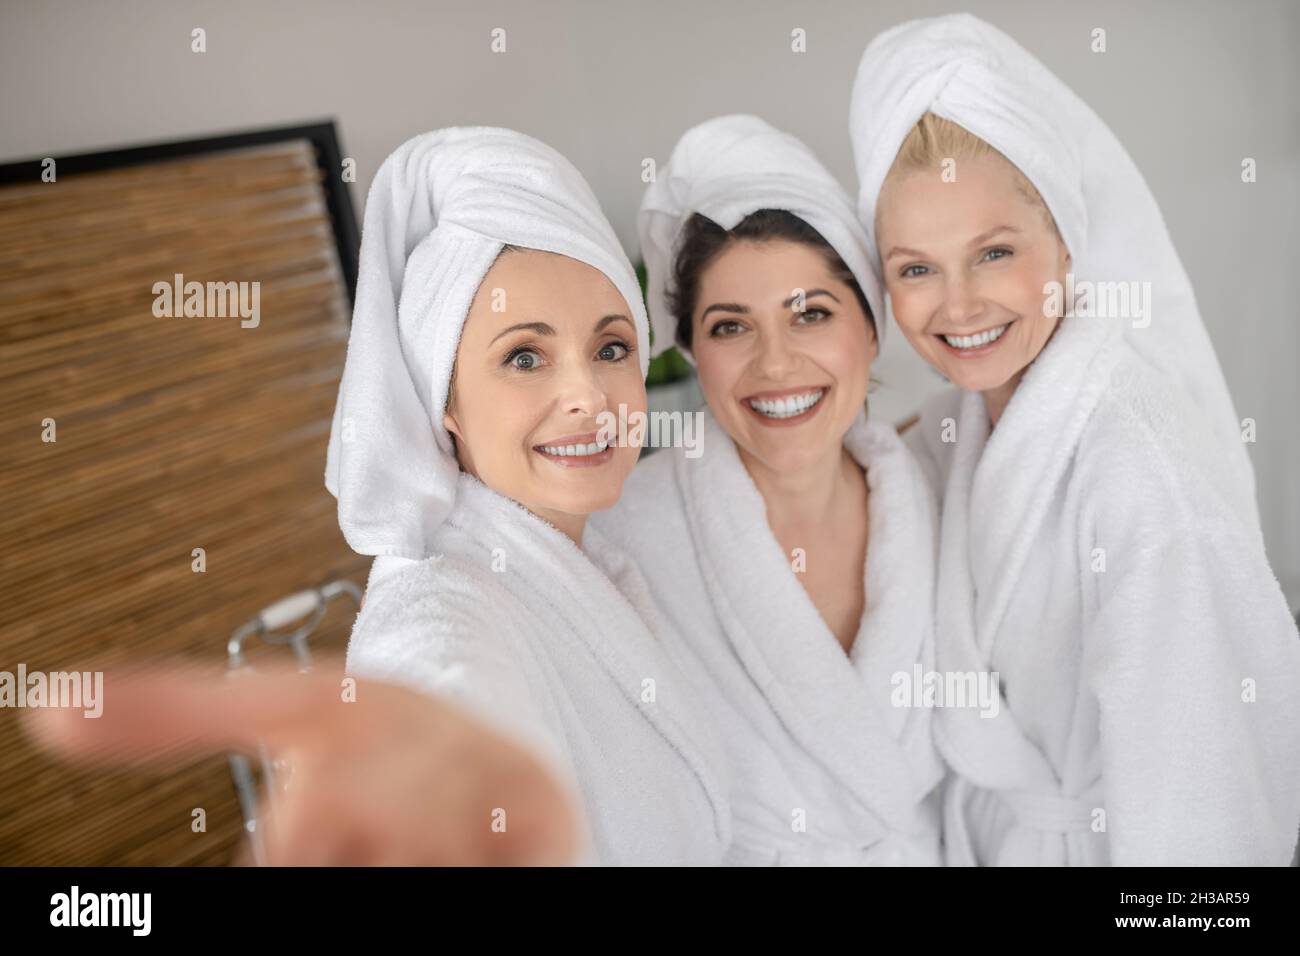 Des femmes souriantes et gaies dans des peignoirs blancs Banque D'Images